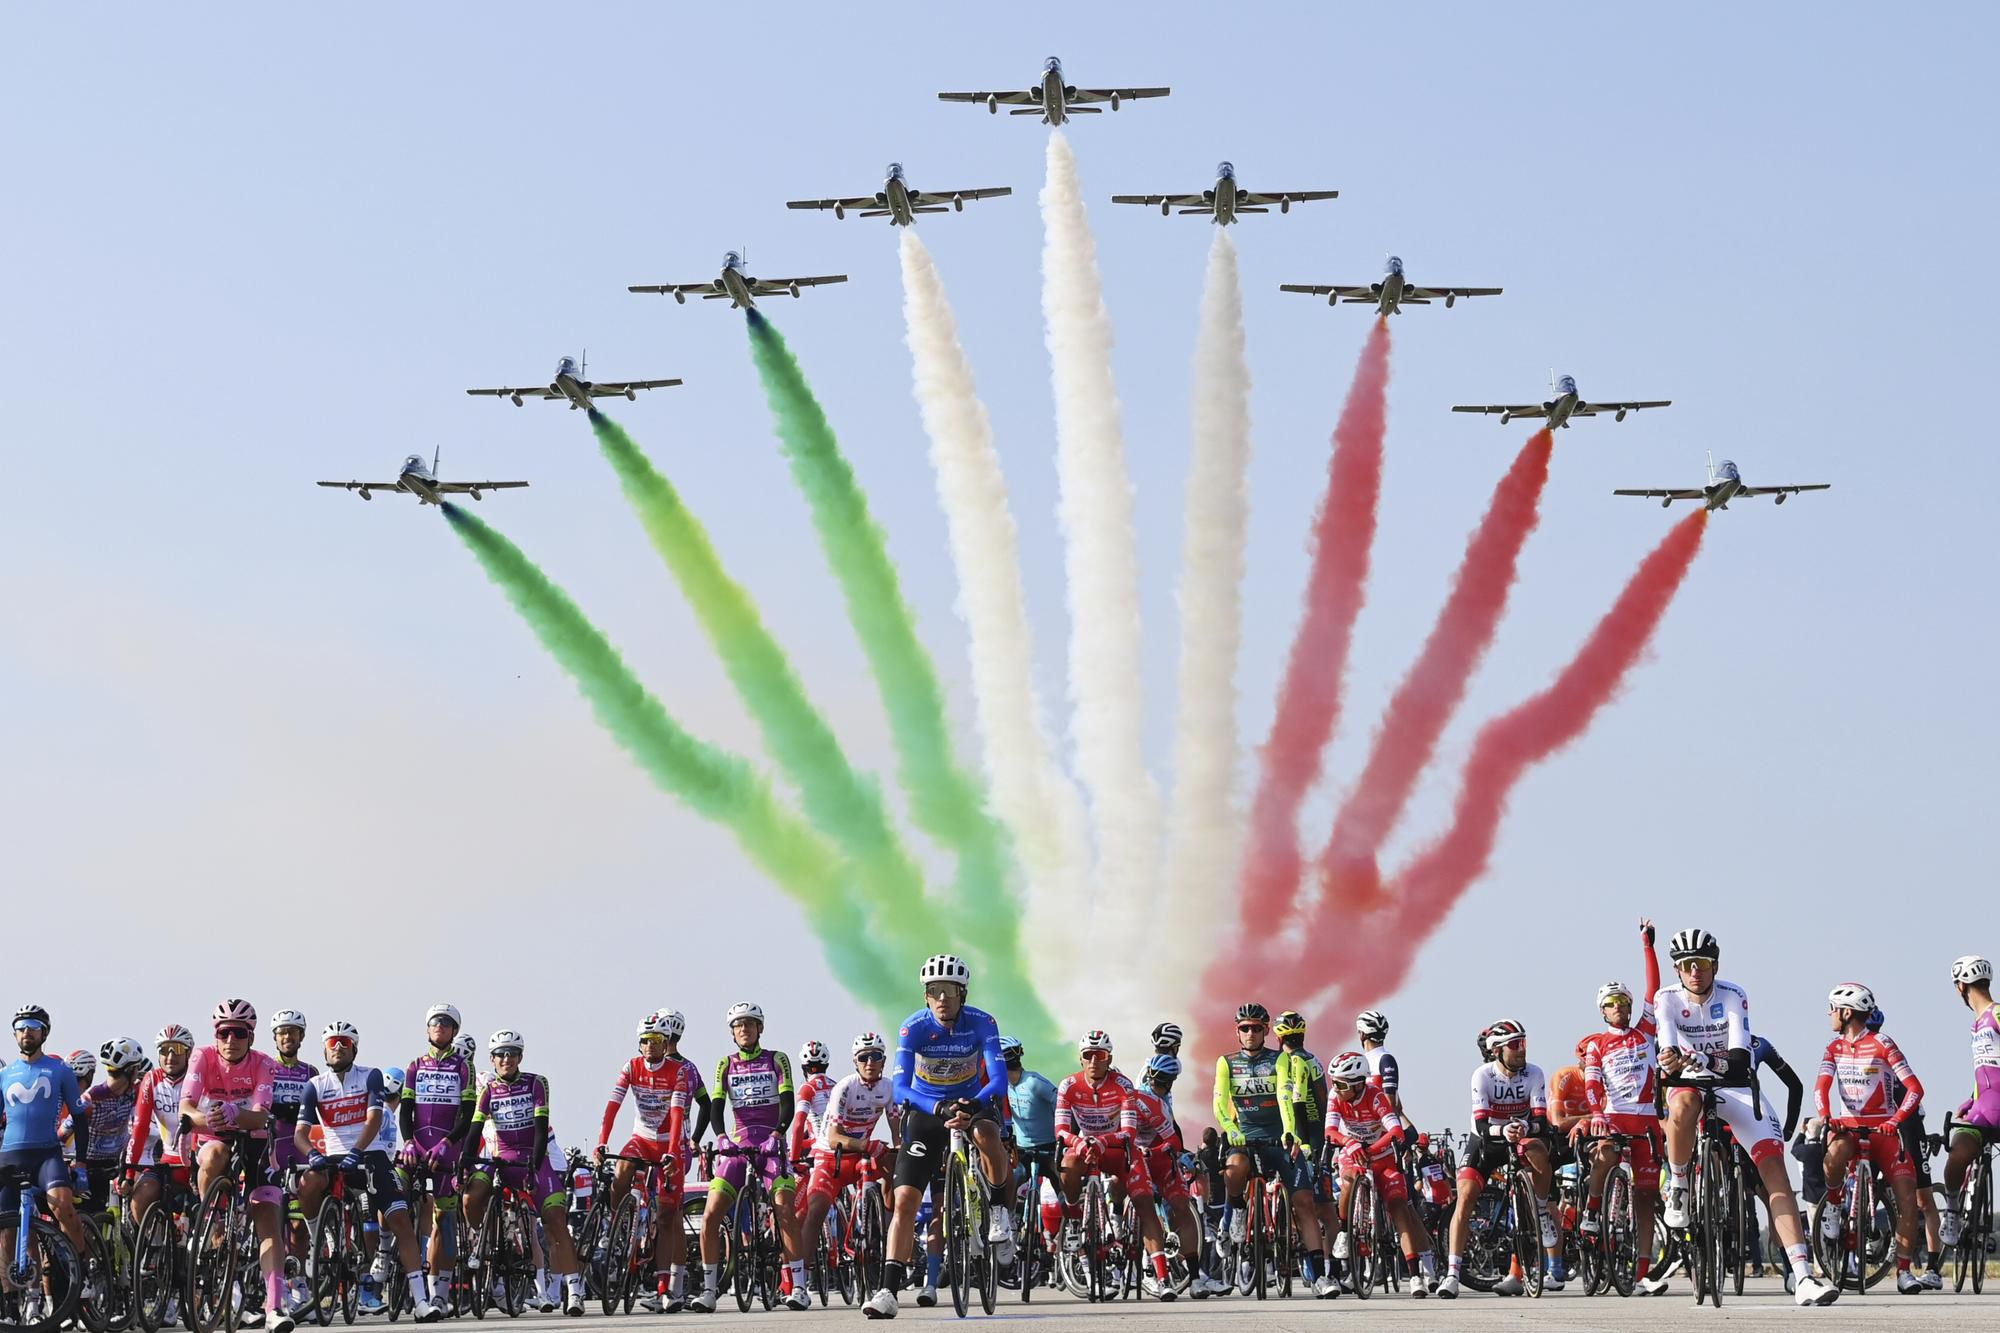 členovia talianskej leteckej akrobatickej skupiny Frecce Tricolori predvádzajú svoje umenie nad pelotónom cyklistov pred štartom 15. etapy pretekov Giro d'Italia